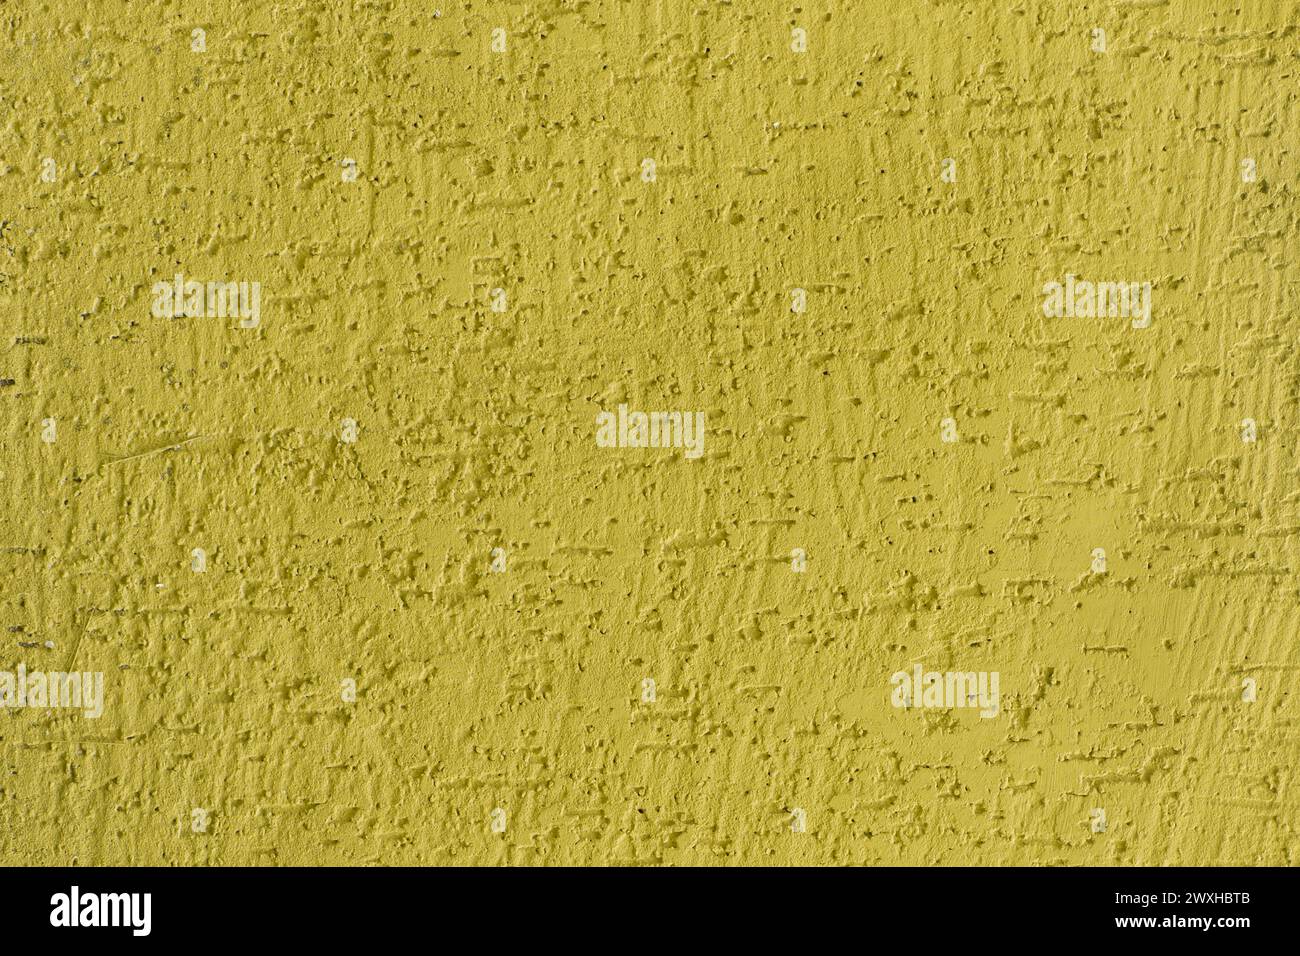 Helles Gelb lebhafte Farbe Oberfläche Putz Wand Textur Stuckhintergrund abstraktes Muster Design. Stockfoto